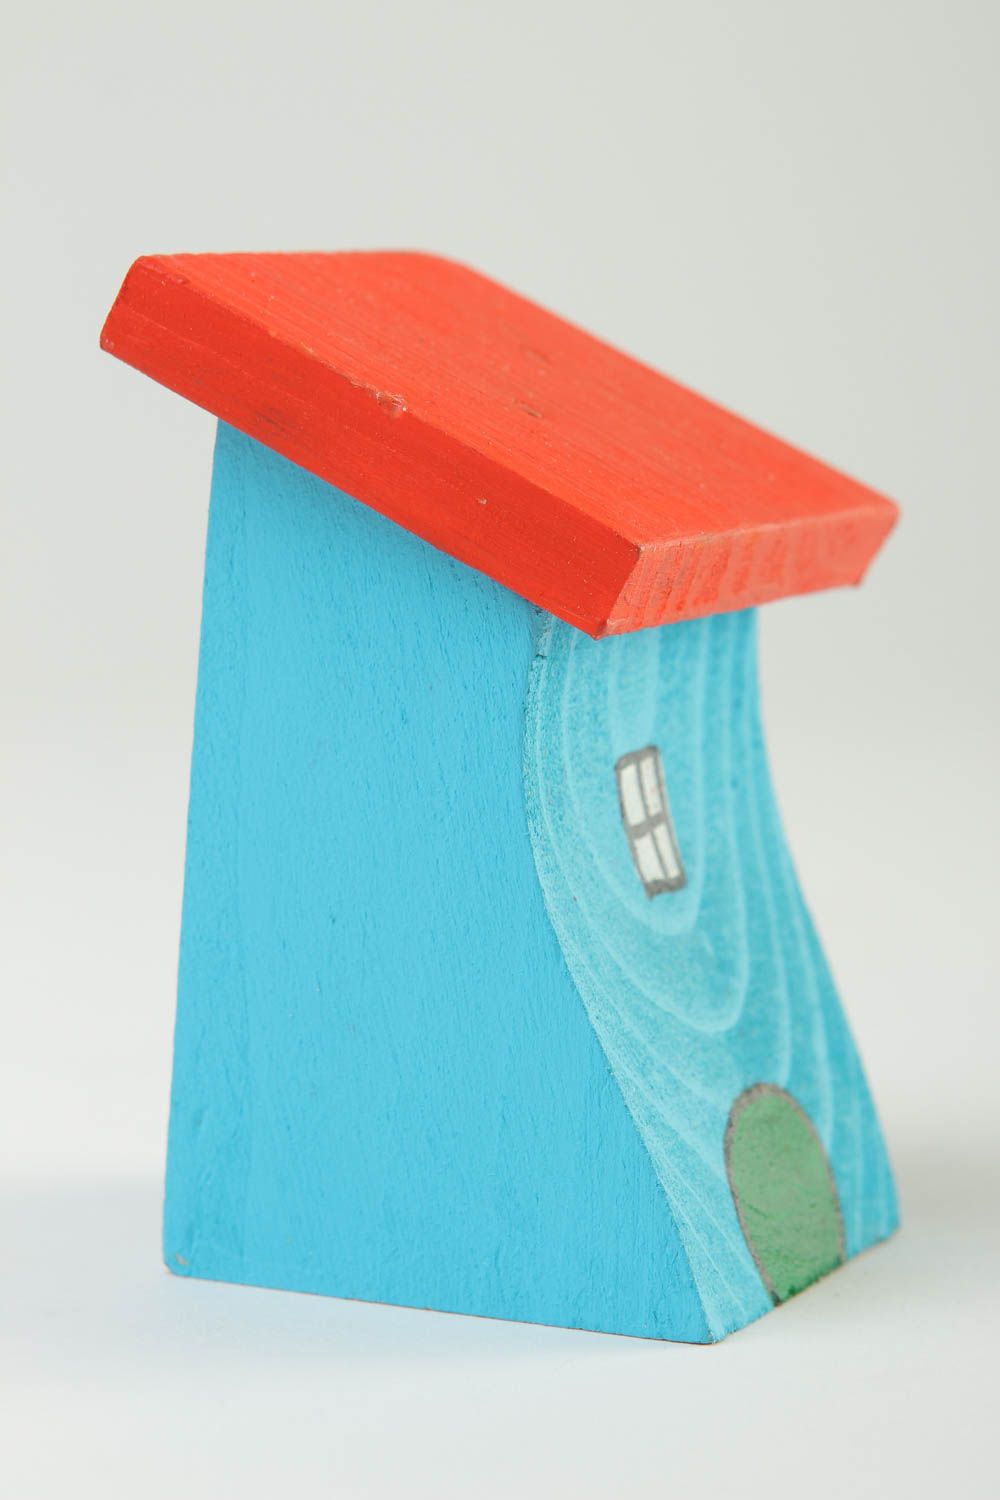 Dekofigur aus Holz handgefertigt Deko Idee Haus originelles Geschenk klein foto 3